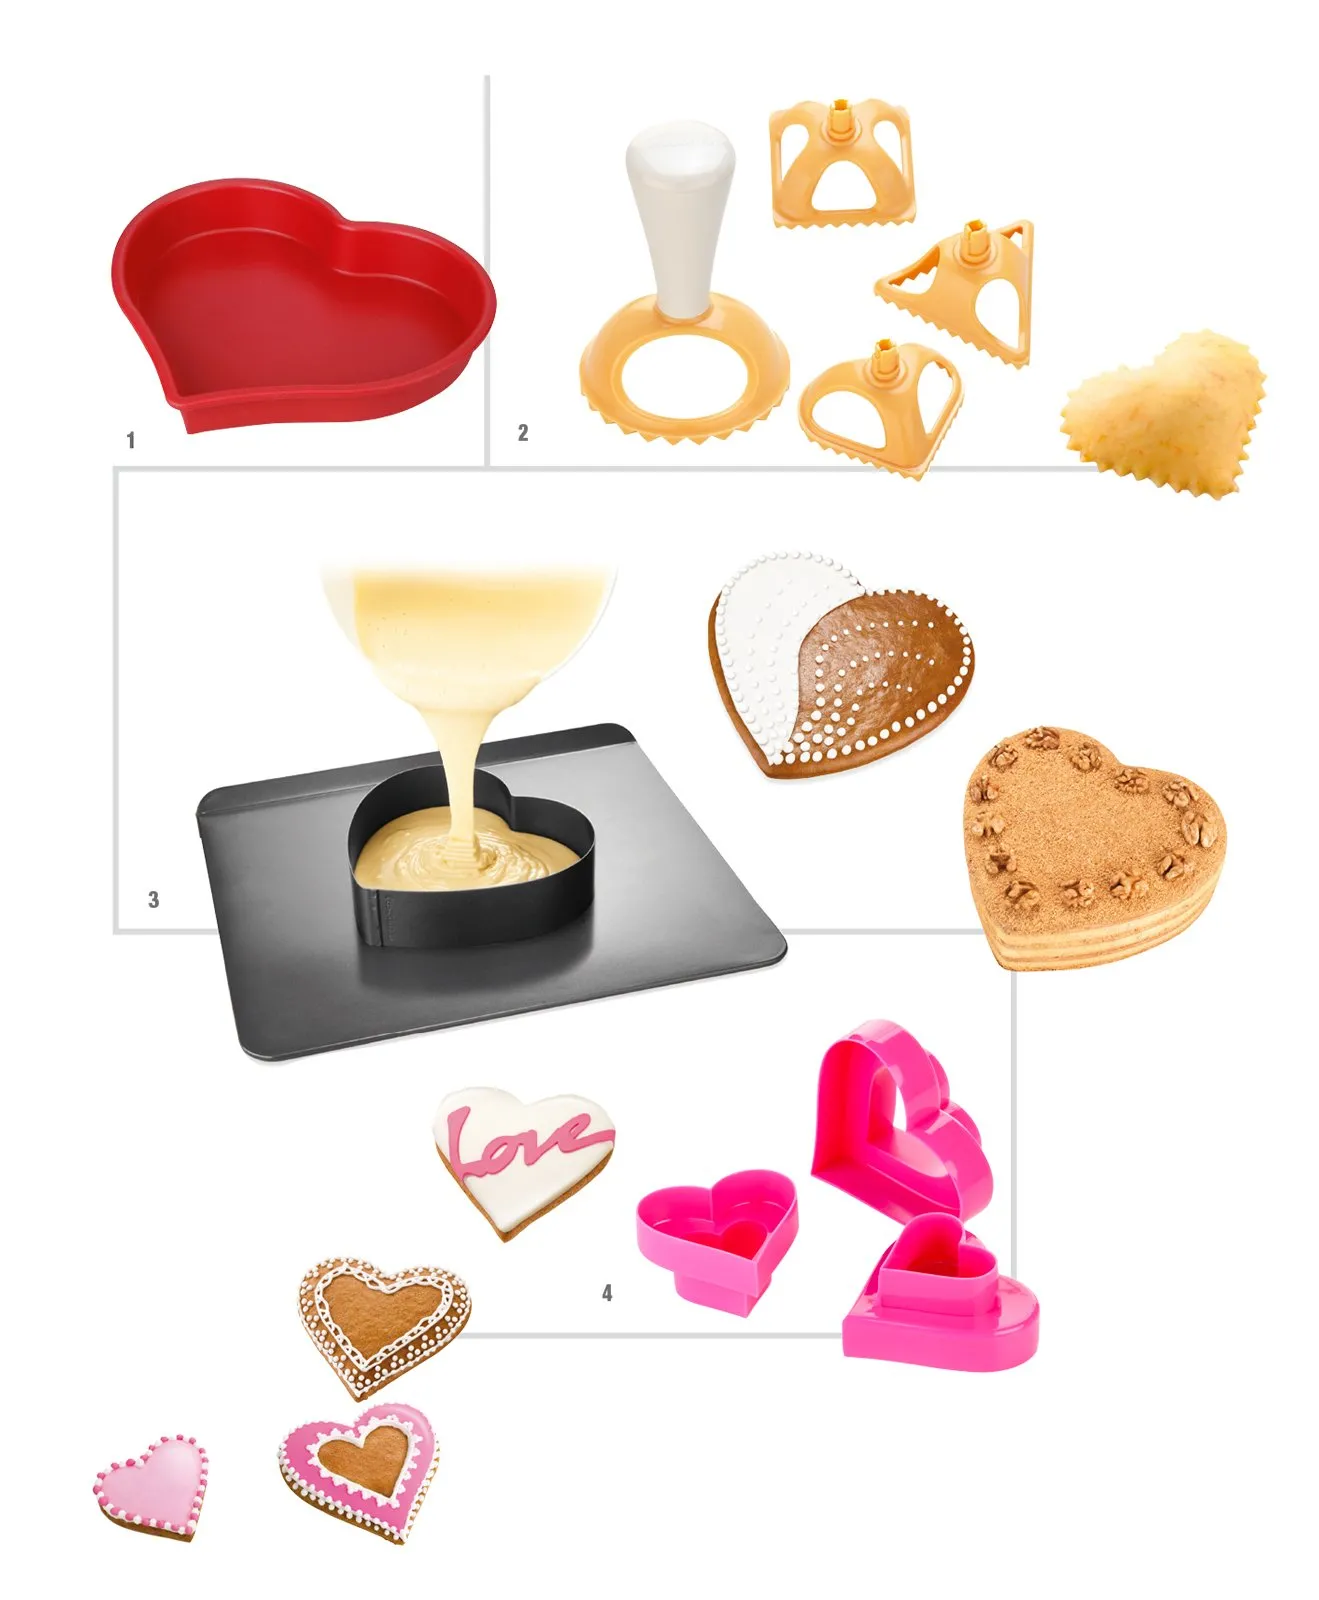 San Valentino: idee e oggetti per cenetta romantica a casa - Cose di Casa